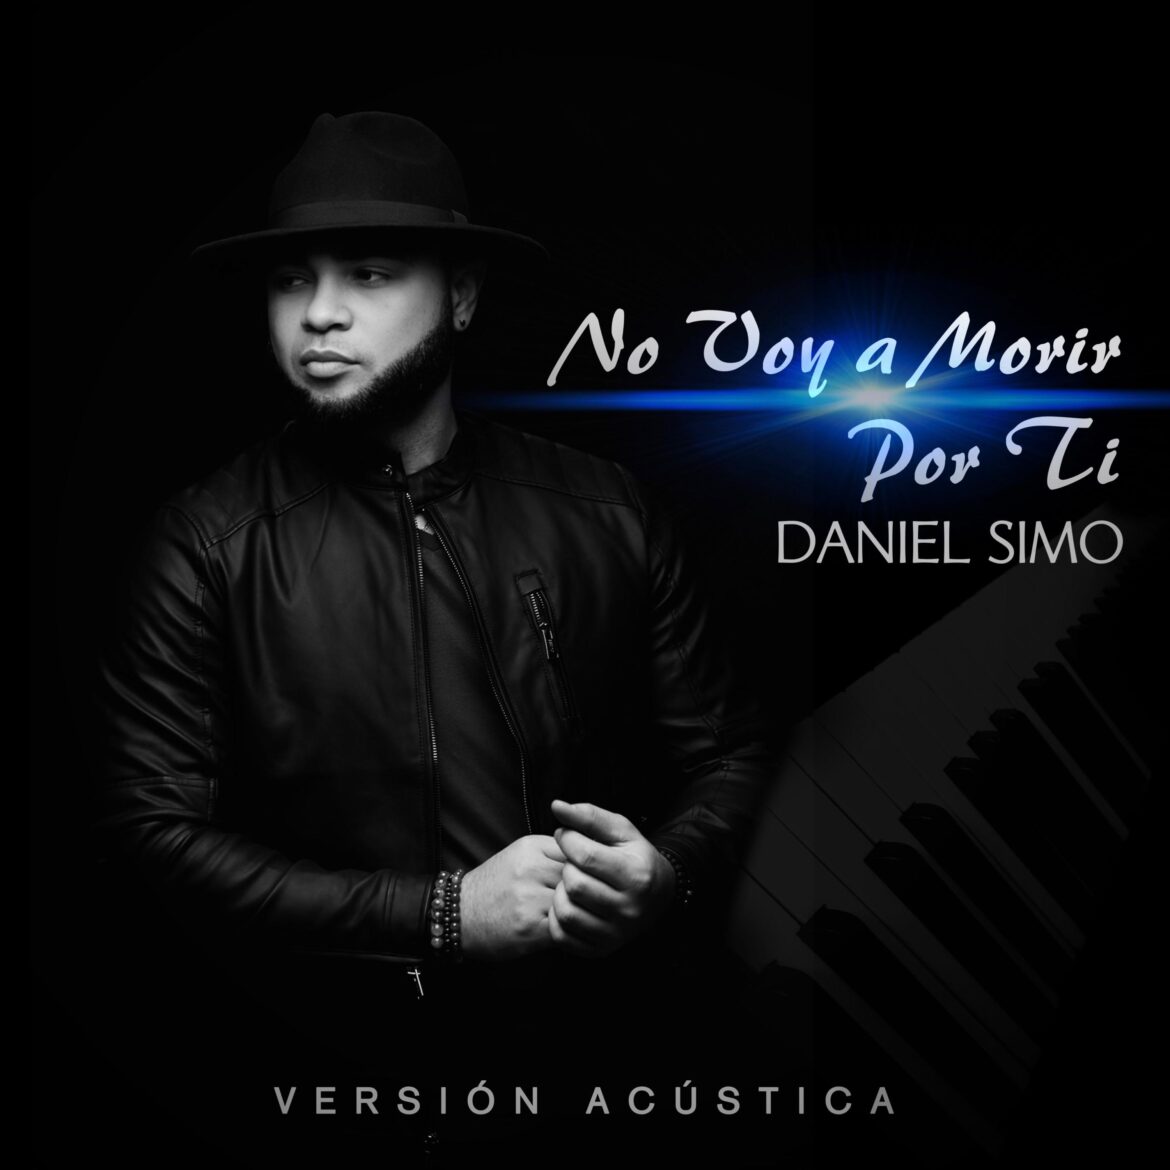 Daniel Simo lanza la versión acústica de “No voy a morir por Ti”